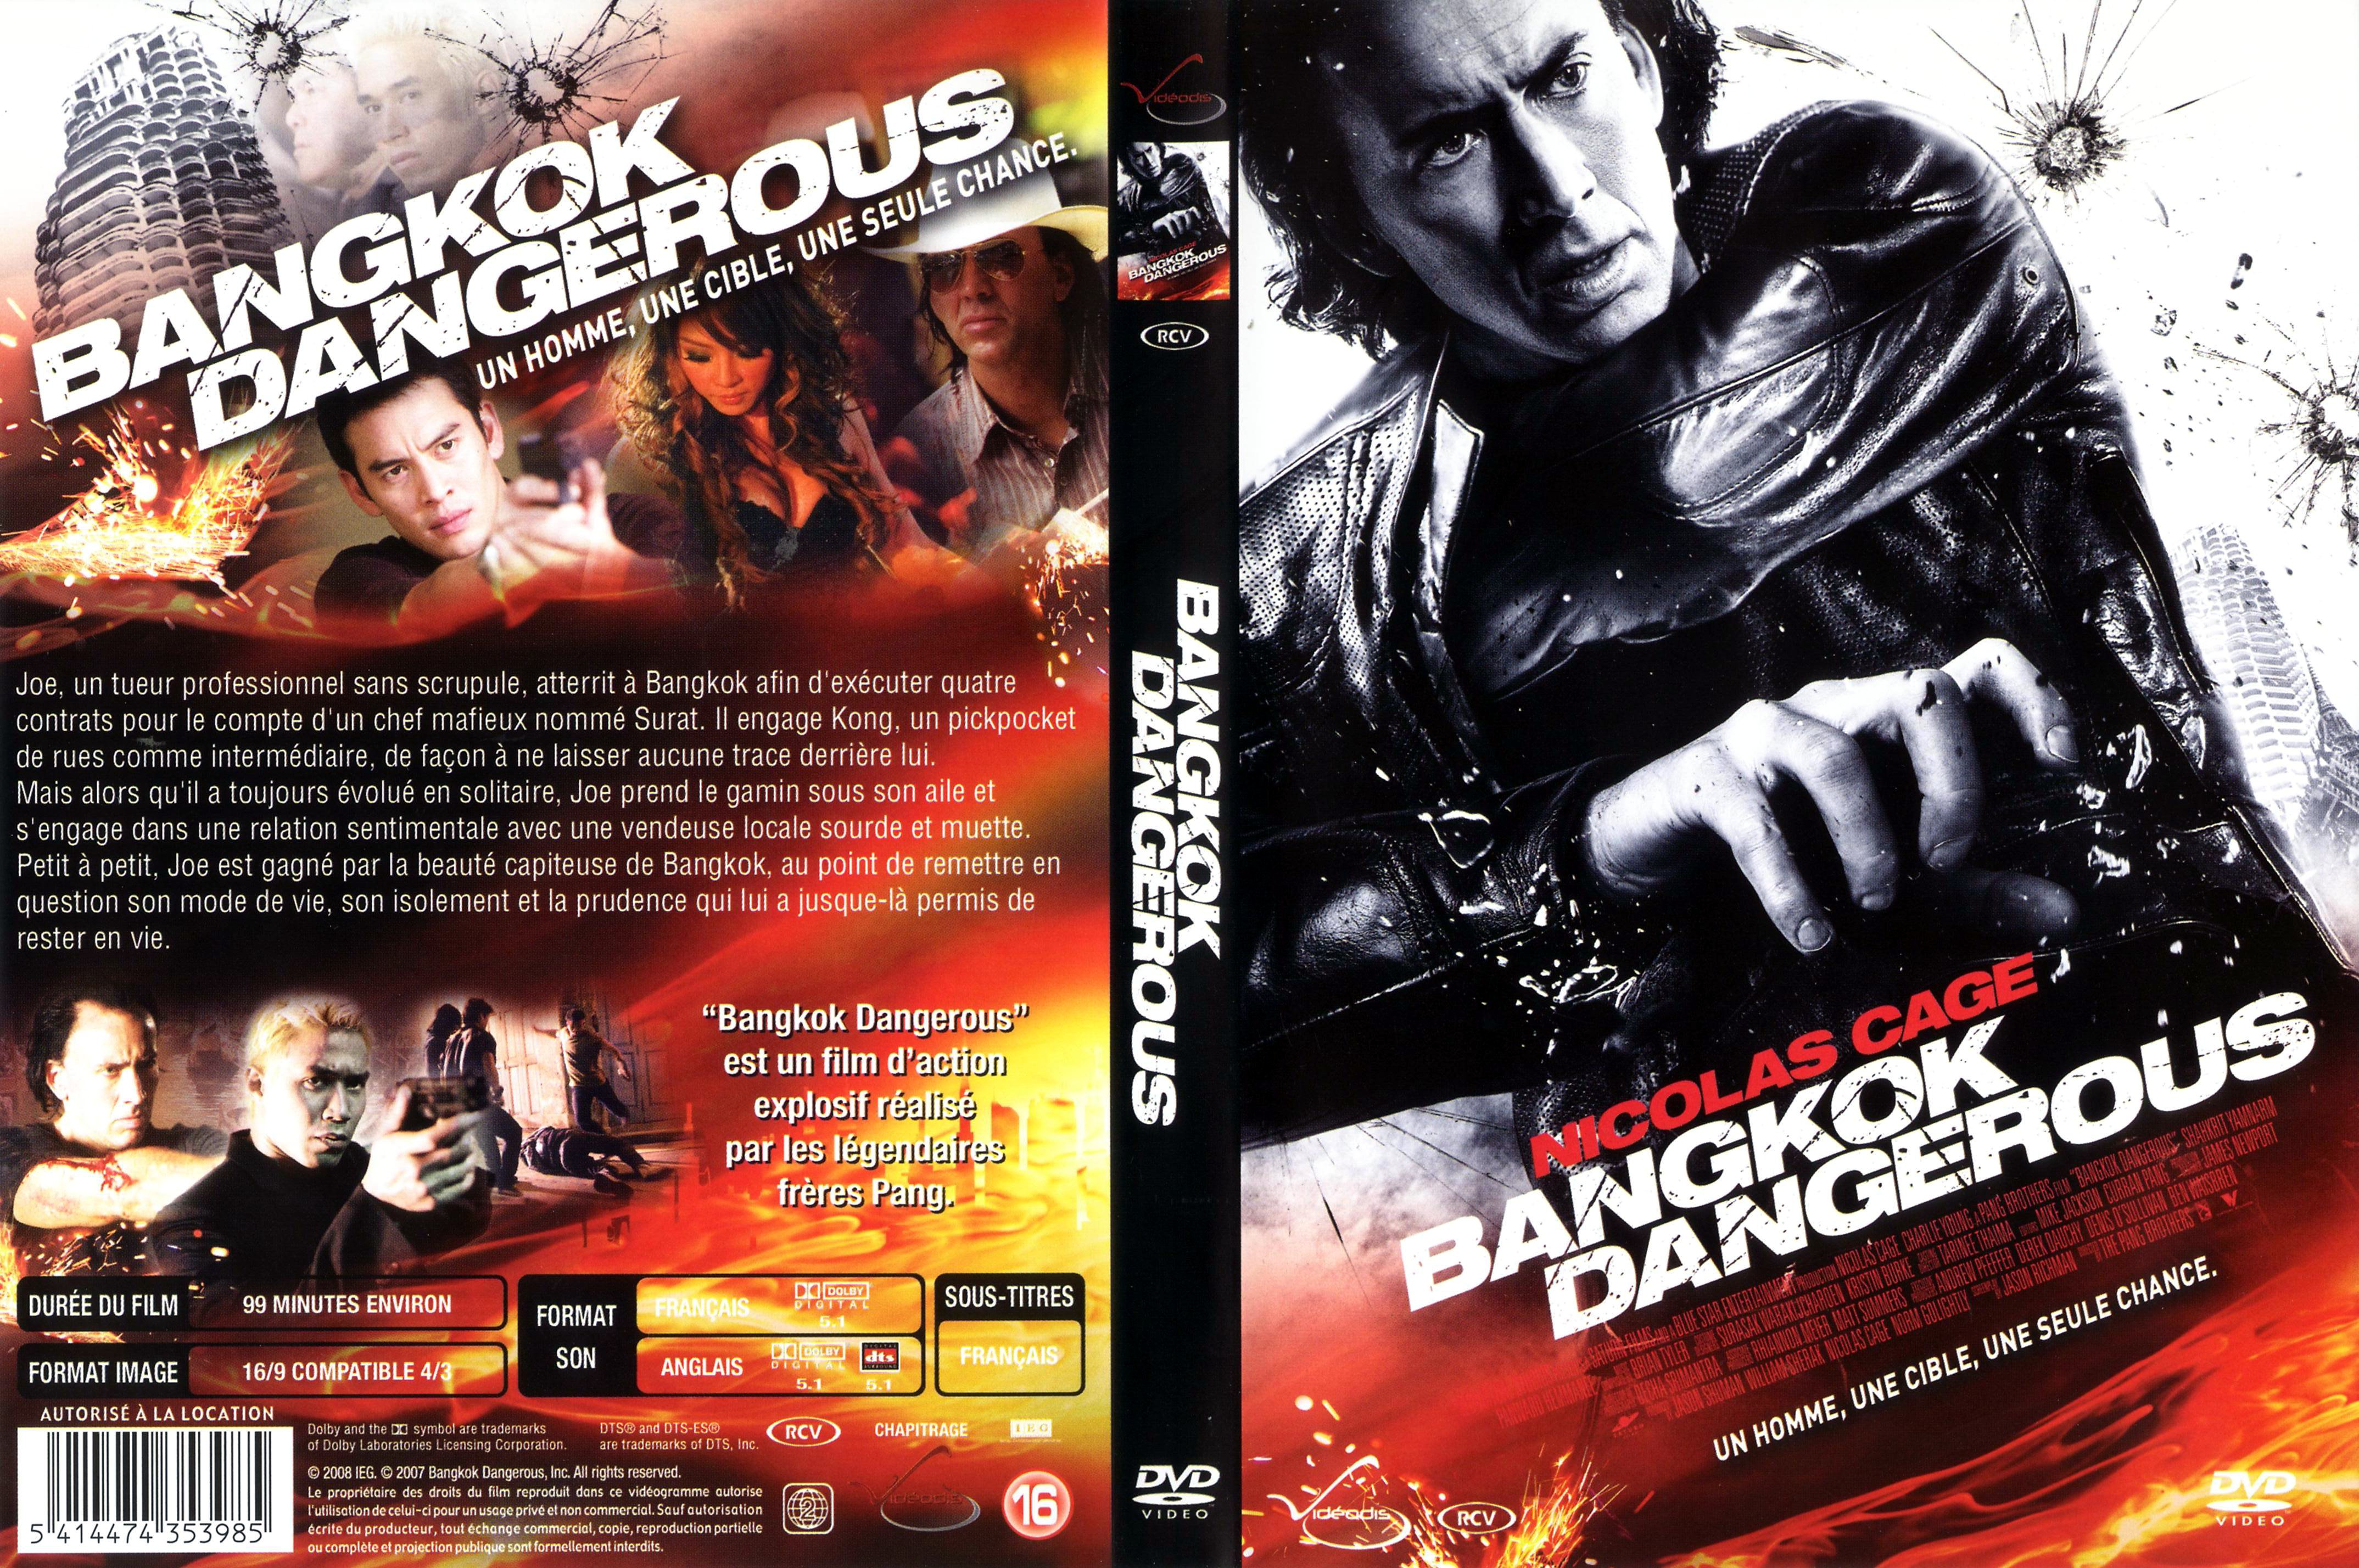 Jaquette DVD Bangkok dangerous (2008) v2